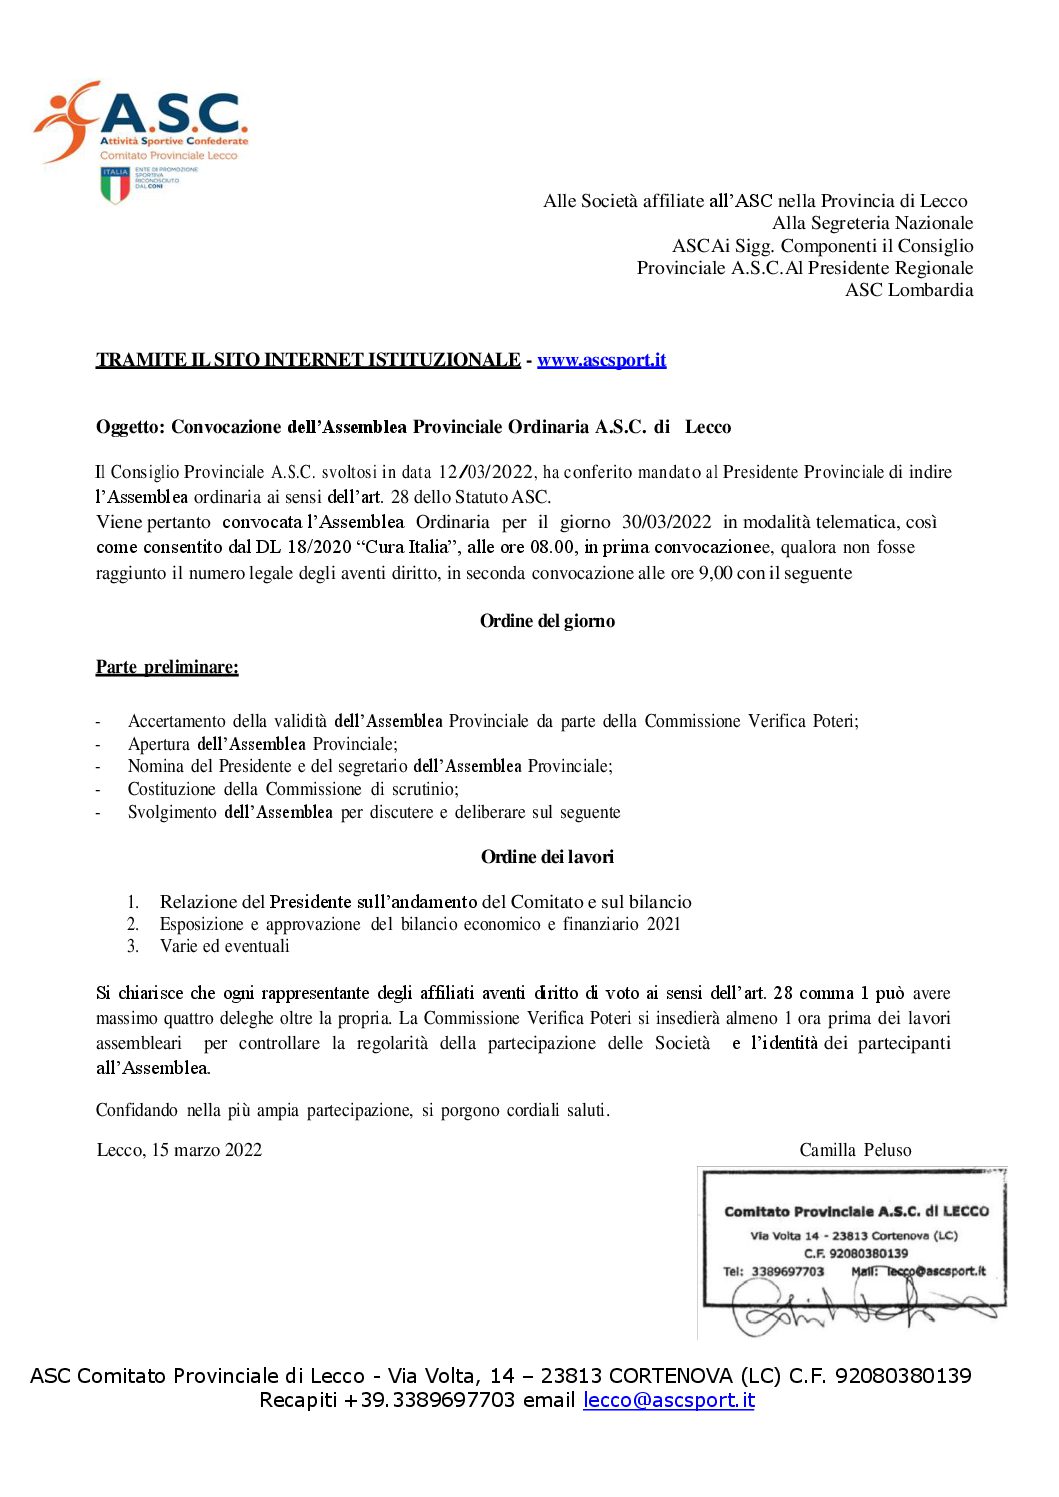 Convocazione assemblea prov_le Lecco 30 mar 2022